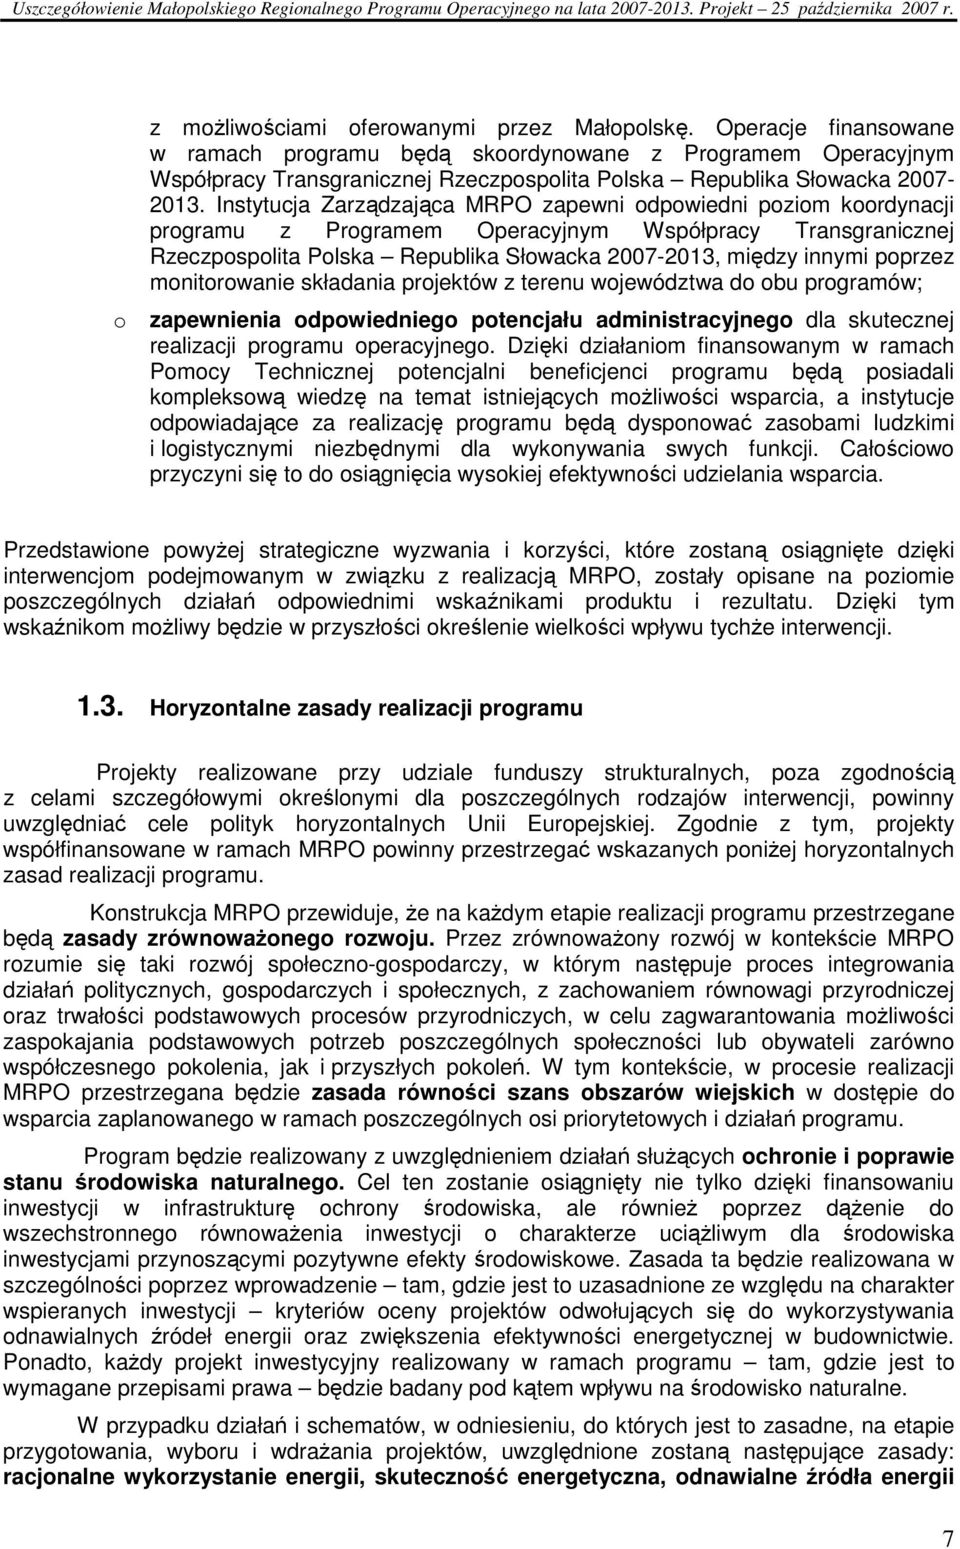 Instytucja Zarządzająca MRPO zapewni odpowiedni poziom koordynacji programu z Programem Operacyjnym Współpracy Transgranicznej Rzeczpospolita Polska Republika Słowacka 2007-2013, między innymi